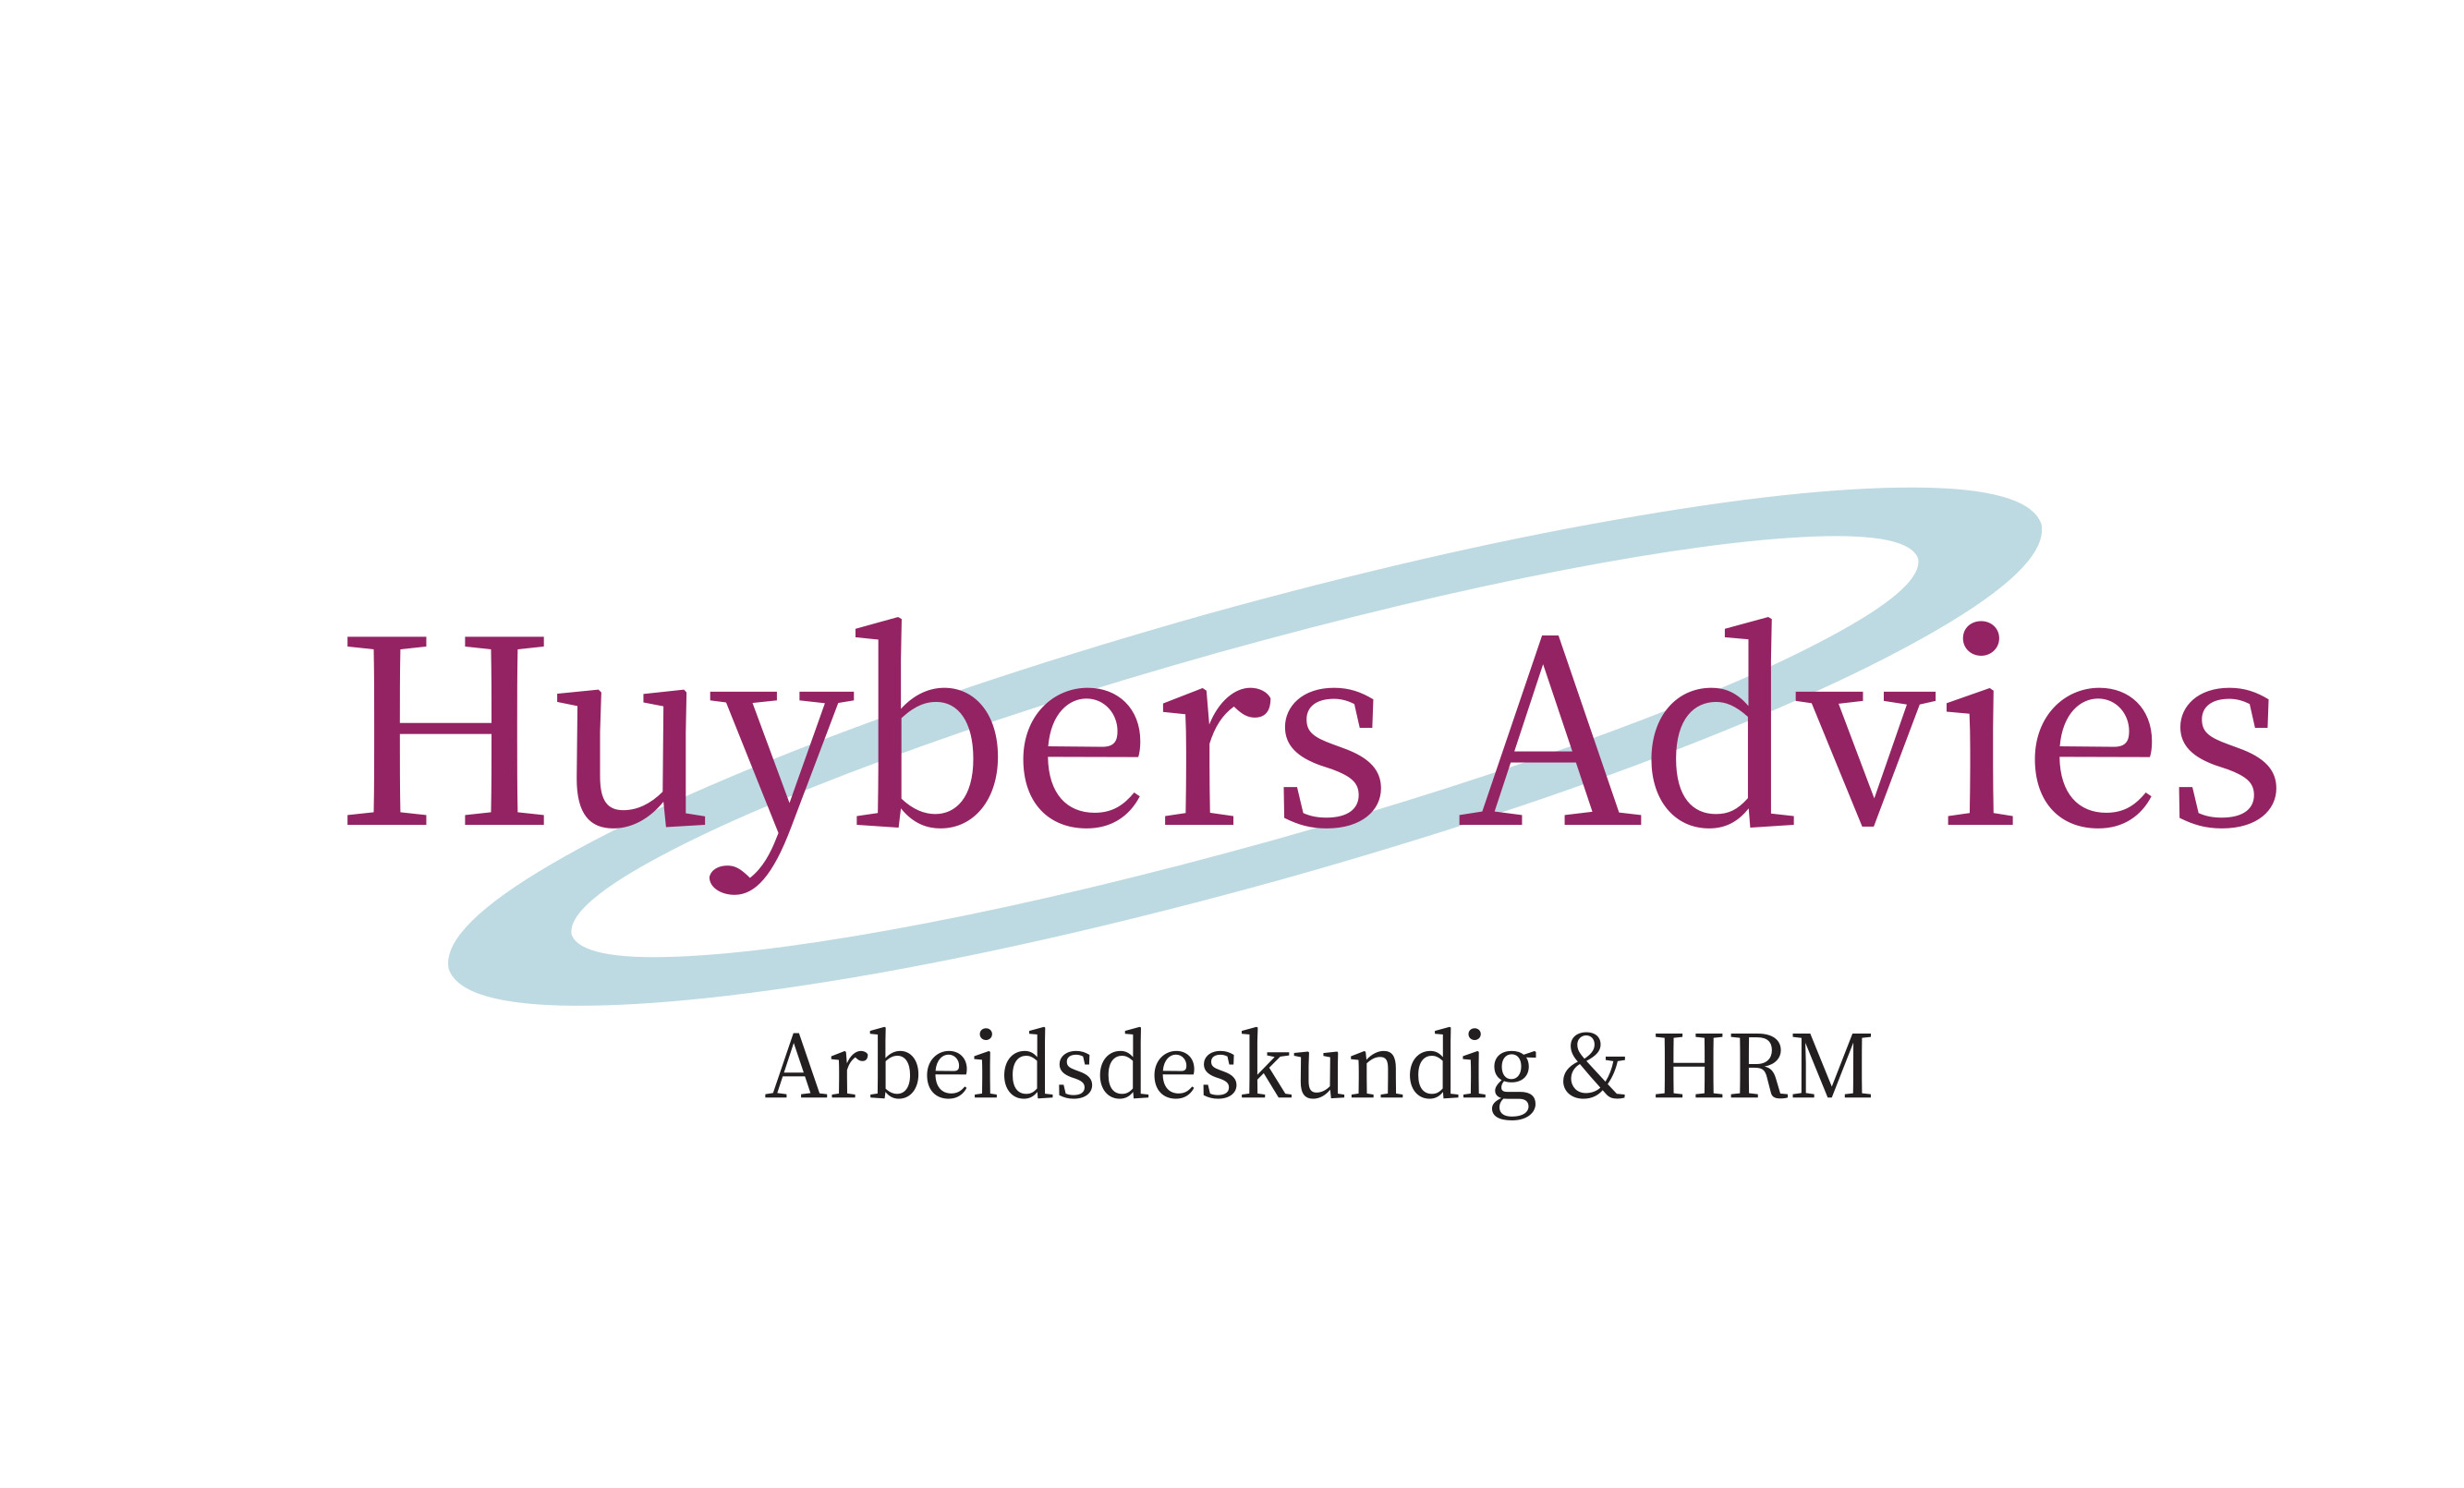 Huybers Advies